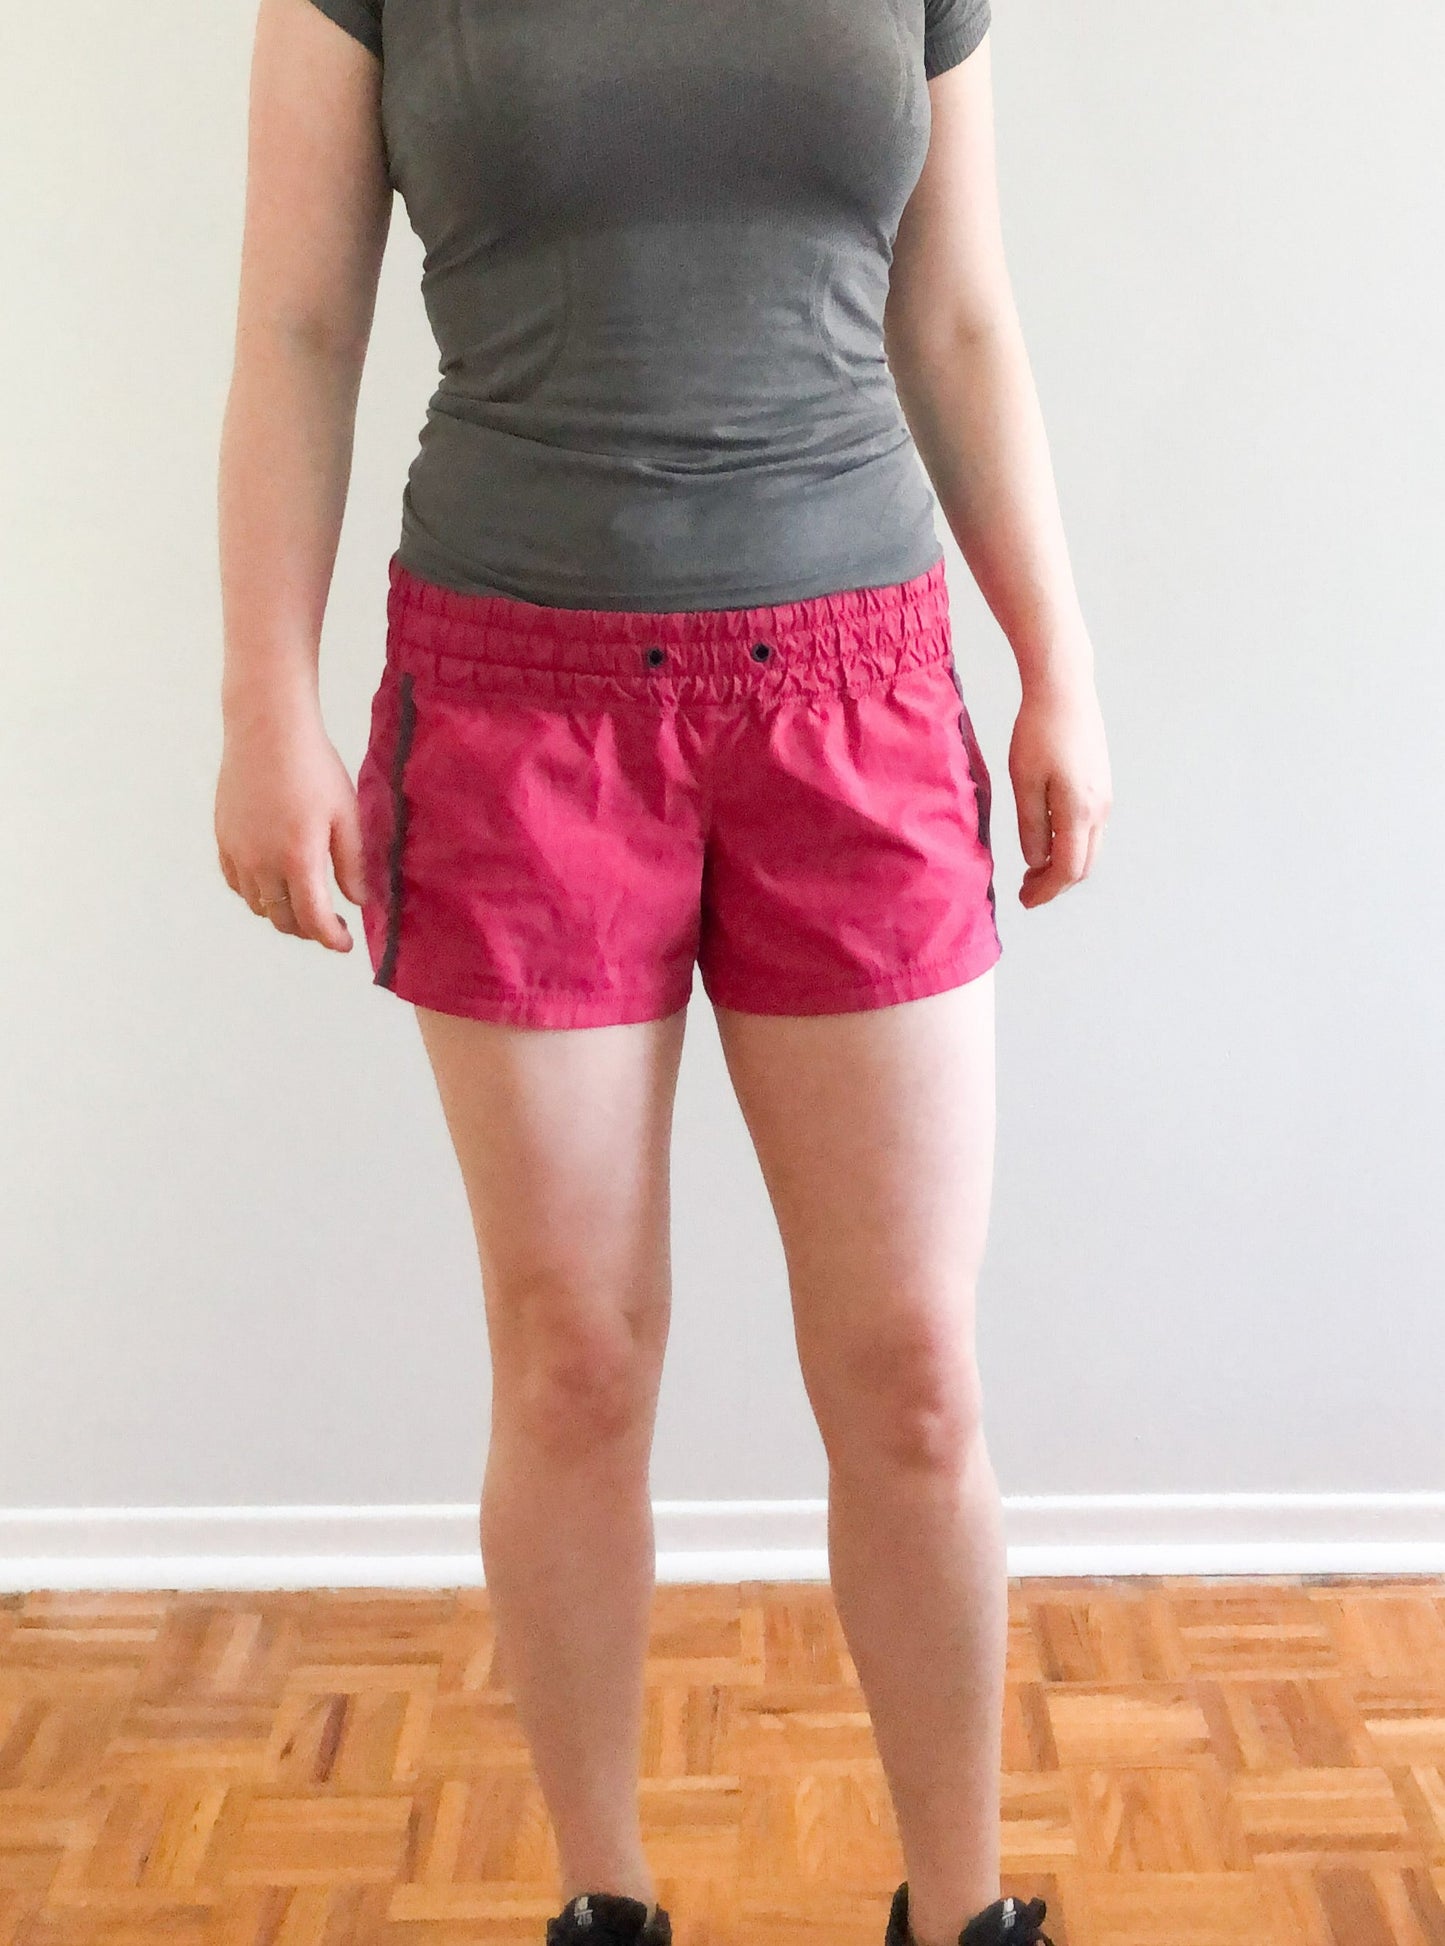 Lululemon Pink Track Running Shorts - Size 6 / S/M